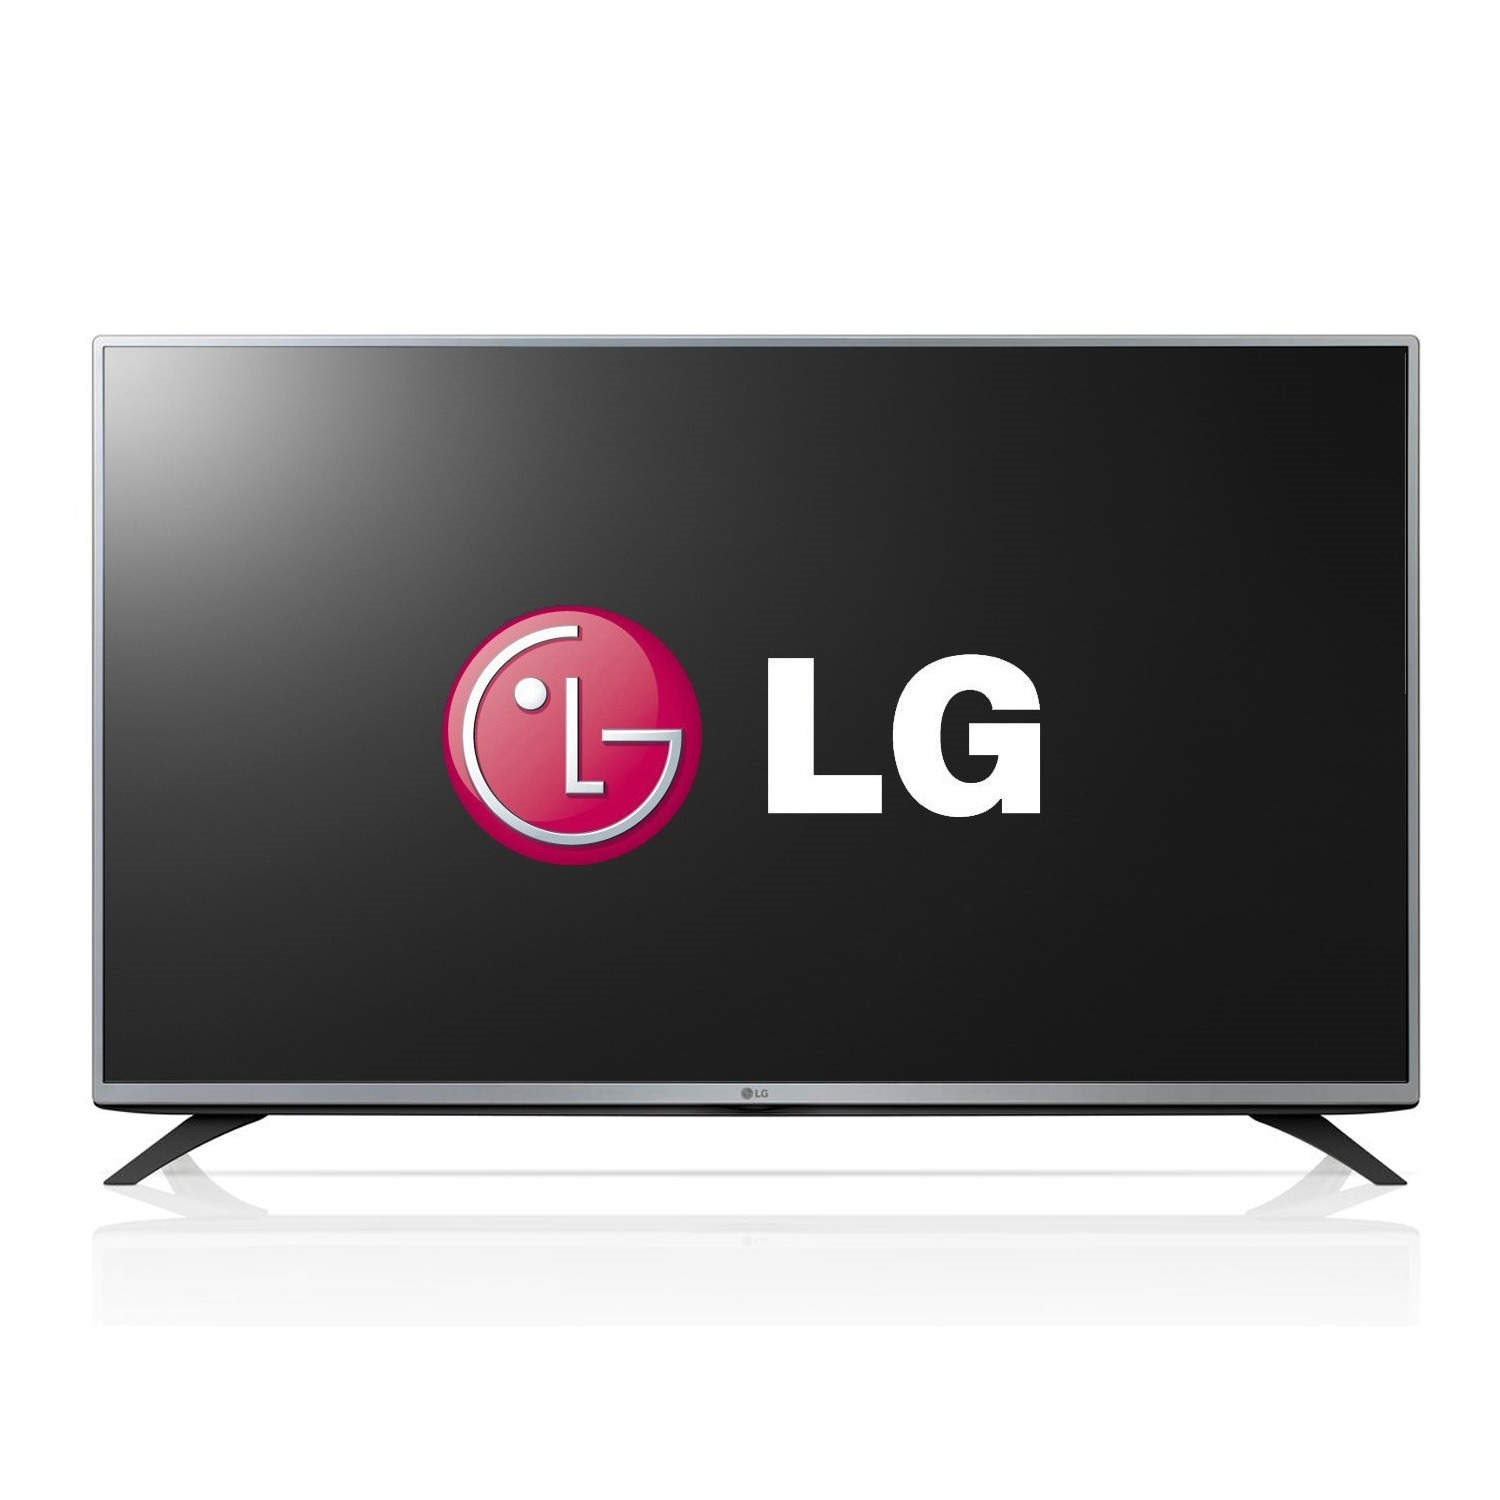 Lg телевизоры логотип. Телевизор LG 42lb561v. Телевизор LG 42lb561v 42". Телевизор LG lb580v. Lg43lf540v.